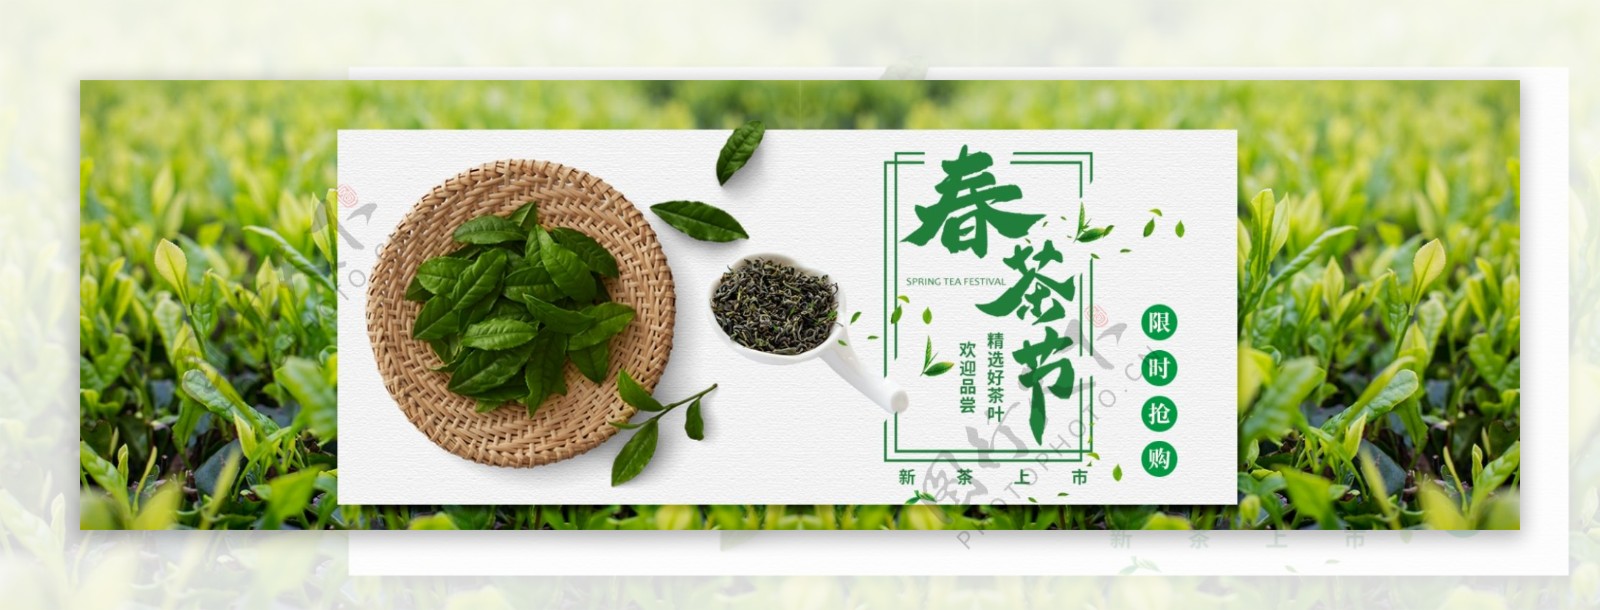 春茶节淘宝促销banner设计